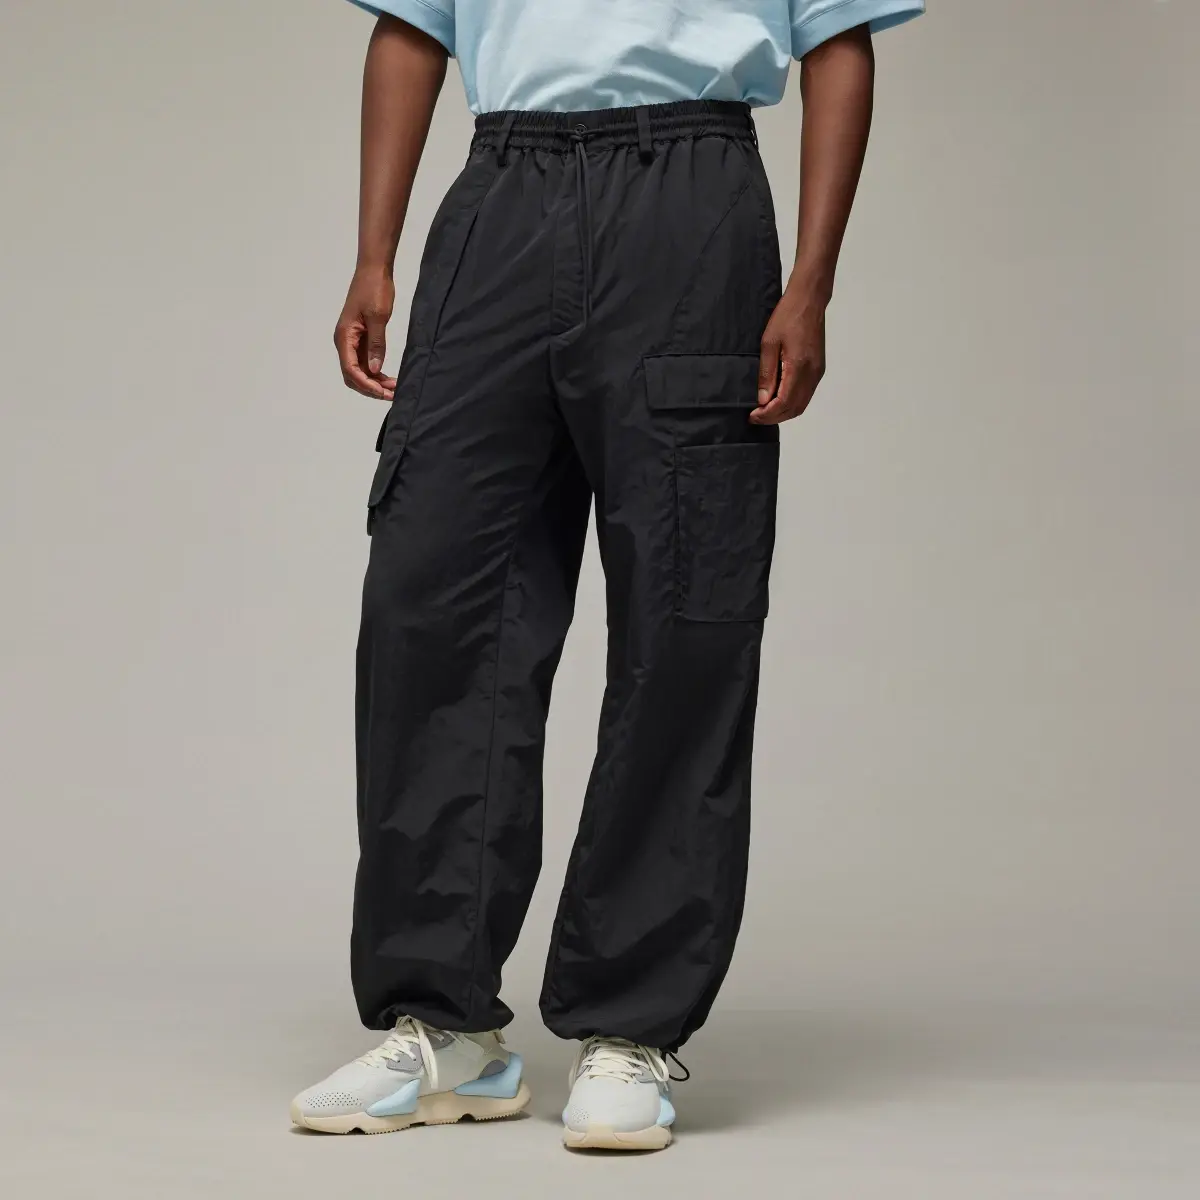 Adidas Spodnie Y-3 Crinkle Nylon. 1